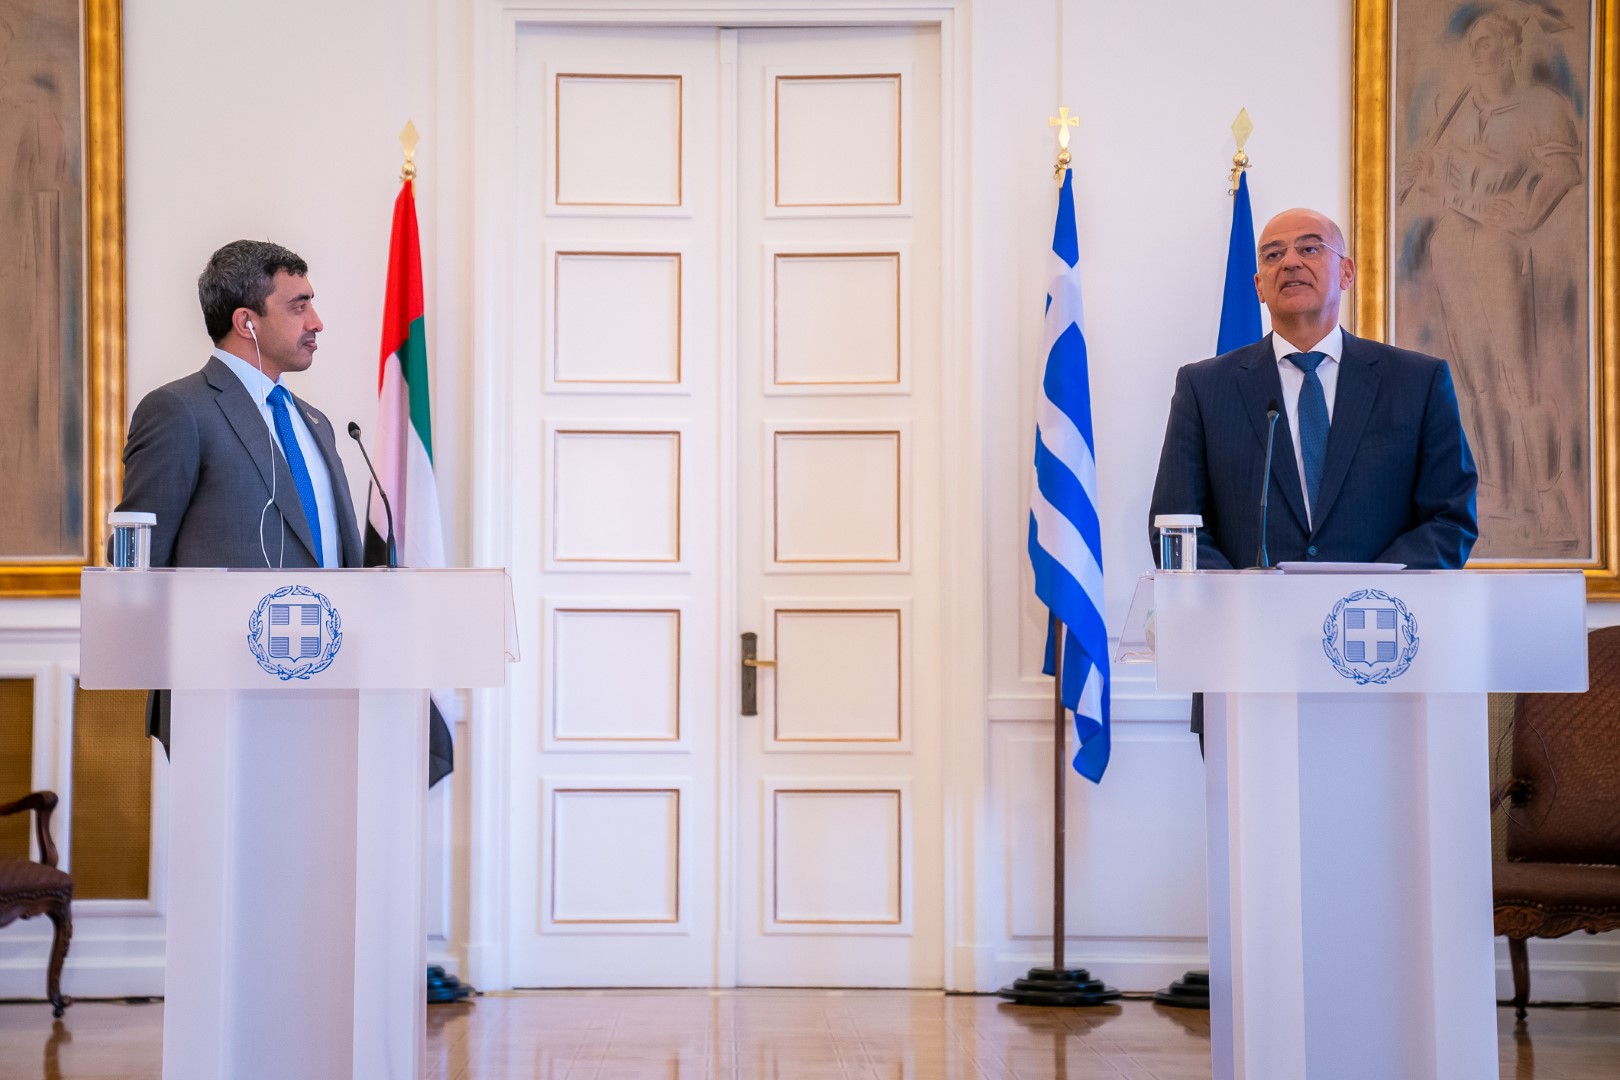  صورة تجمع وزير الخارجية الإماراتي عبد الله بن زايد مع وزير الدفاع اليوناني نيكوس ديندياس (وام)